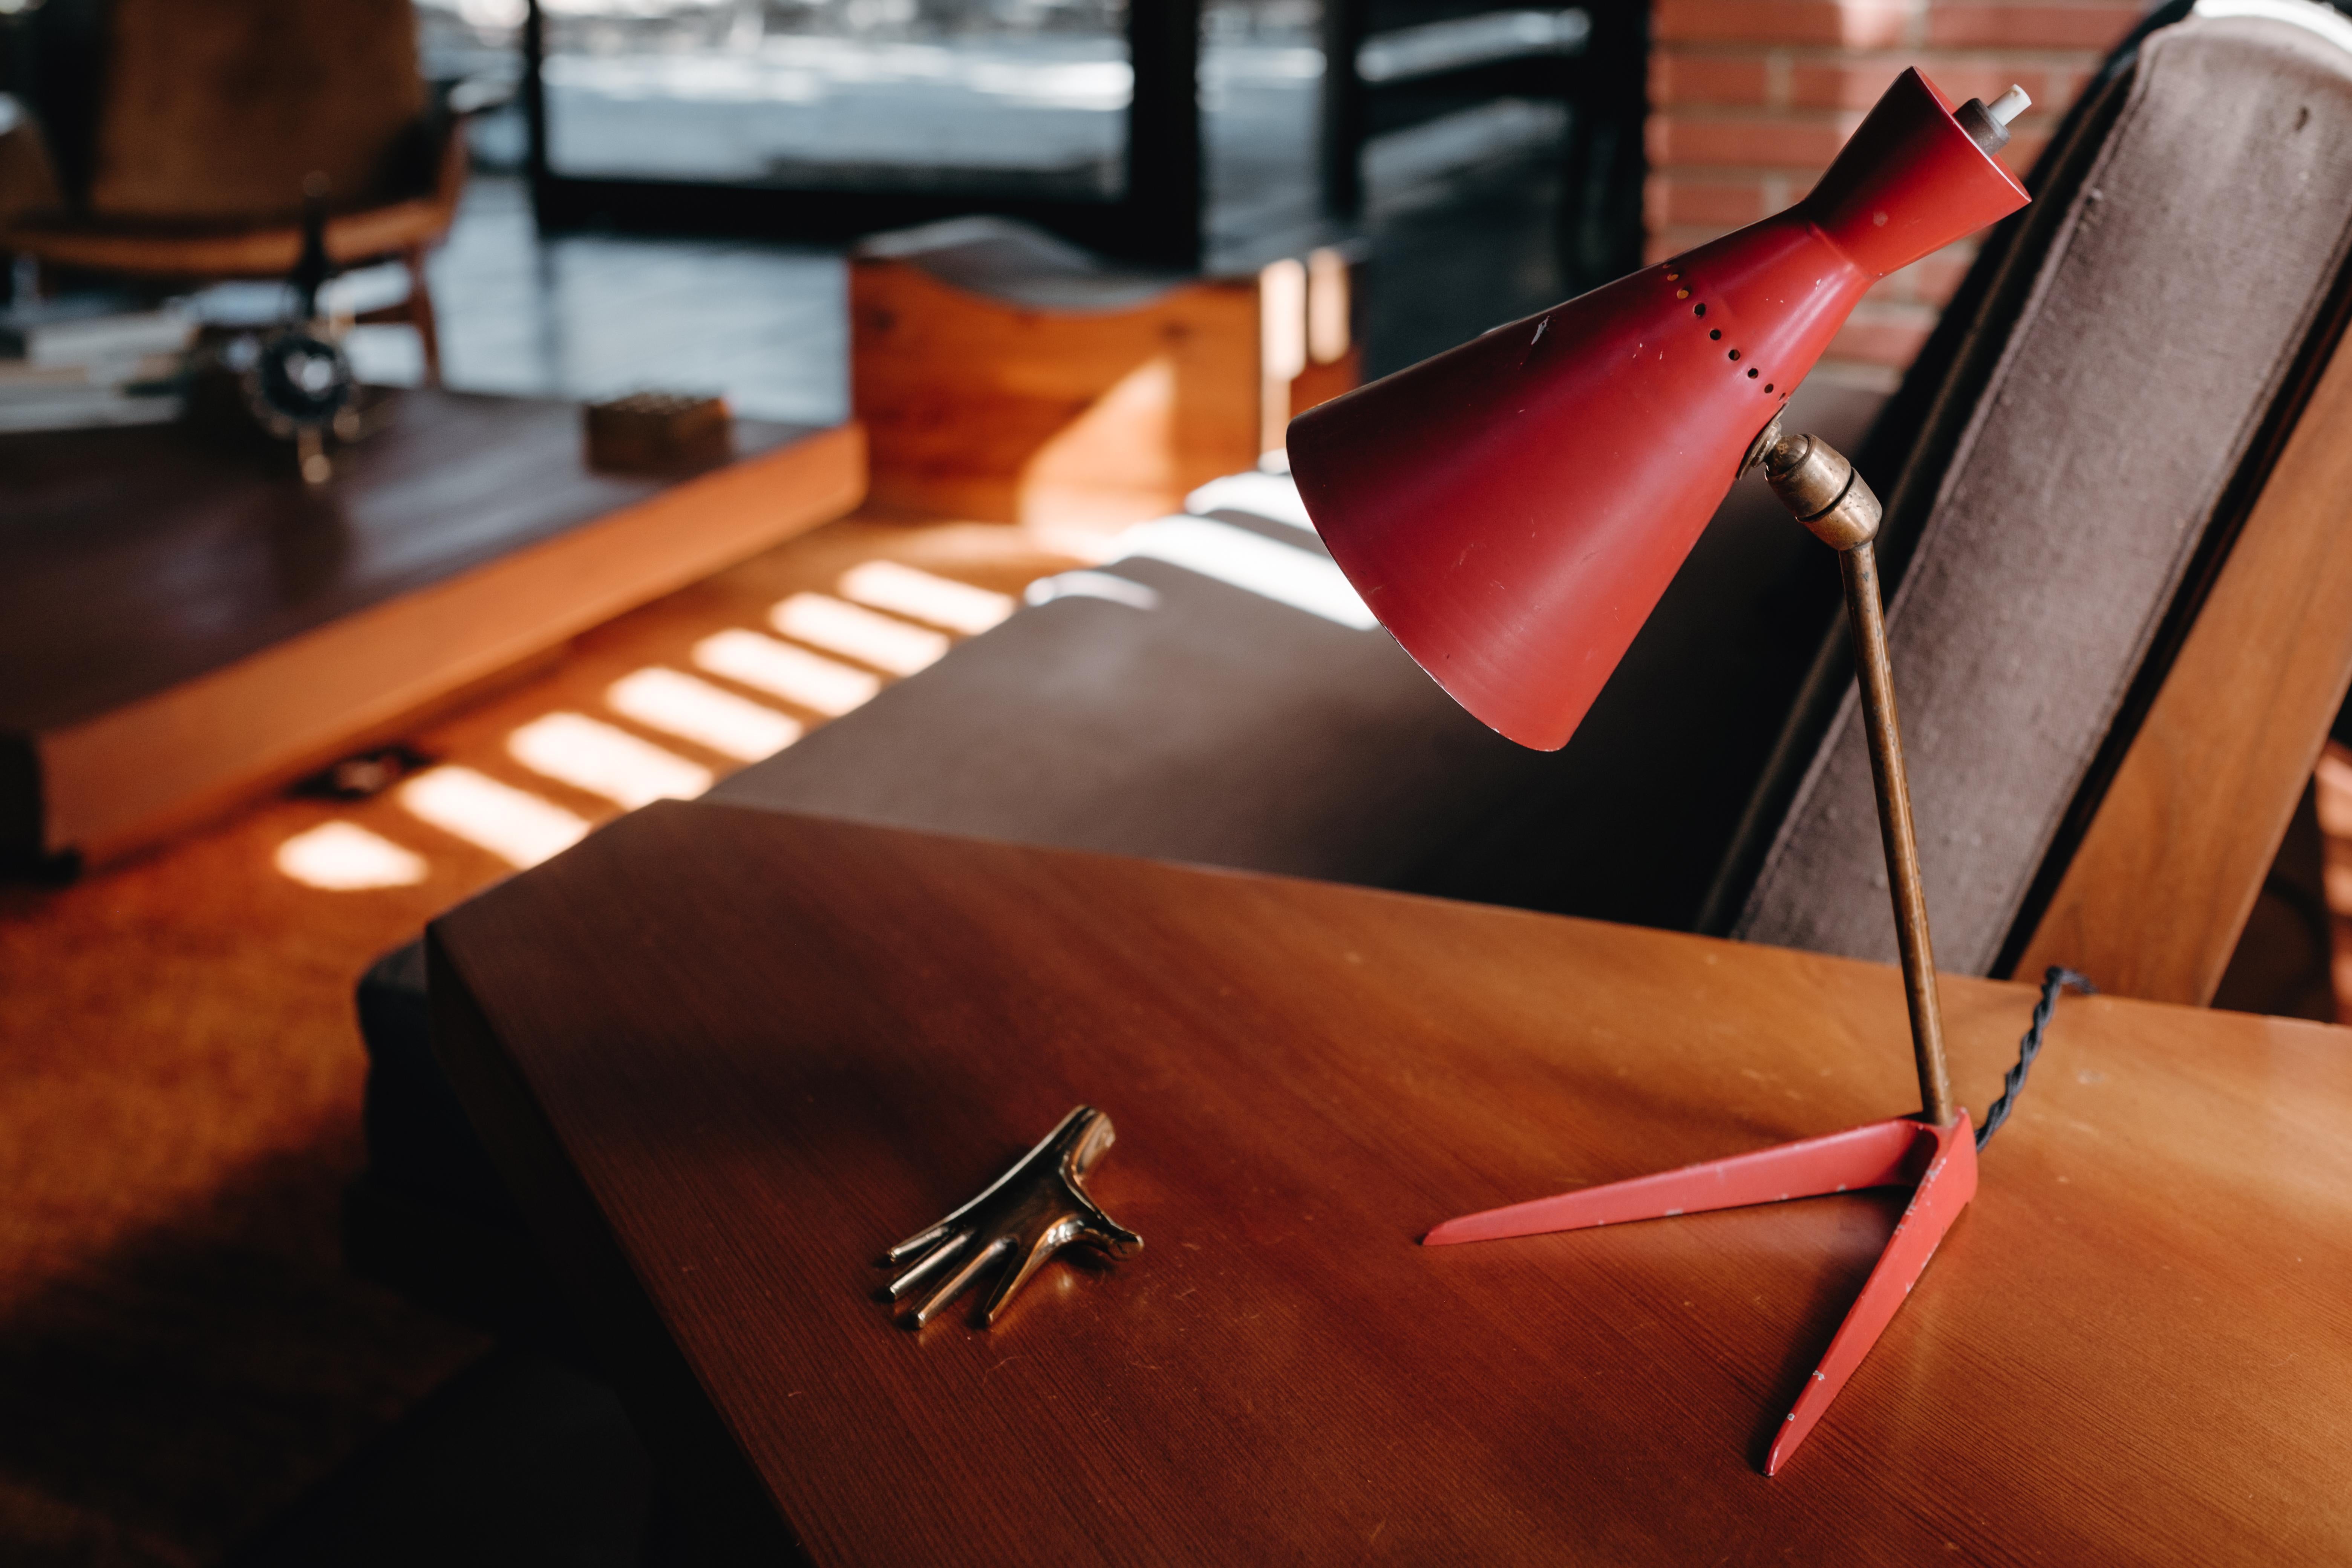 lampe de table Stilux Milano des années 1950 en métal rouge et bois. Exécuté en bois peint en rouge, en métal et en laiton. L'abat-jour est réglable en deux points pour une grande variété d'options d'éclairage.

Stilux était l'une des entreprises de